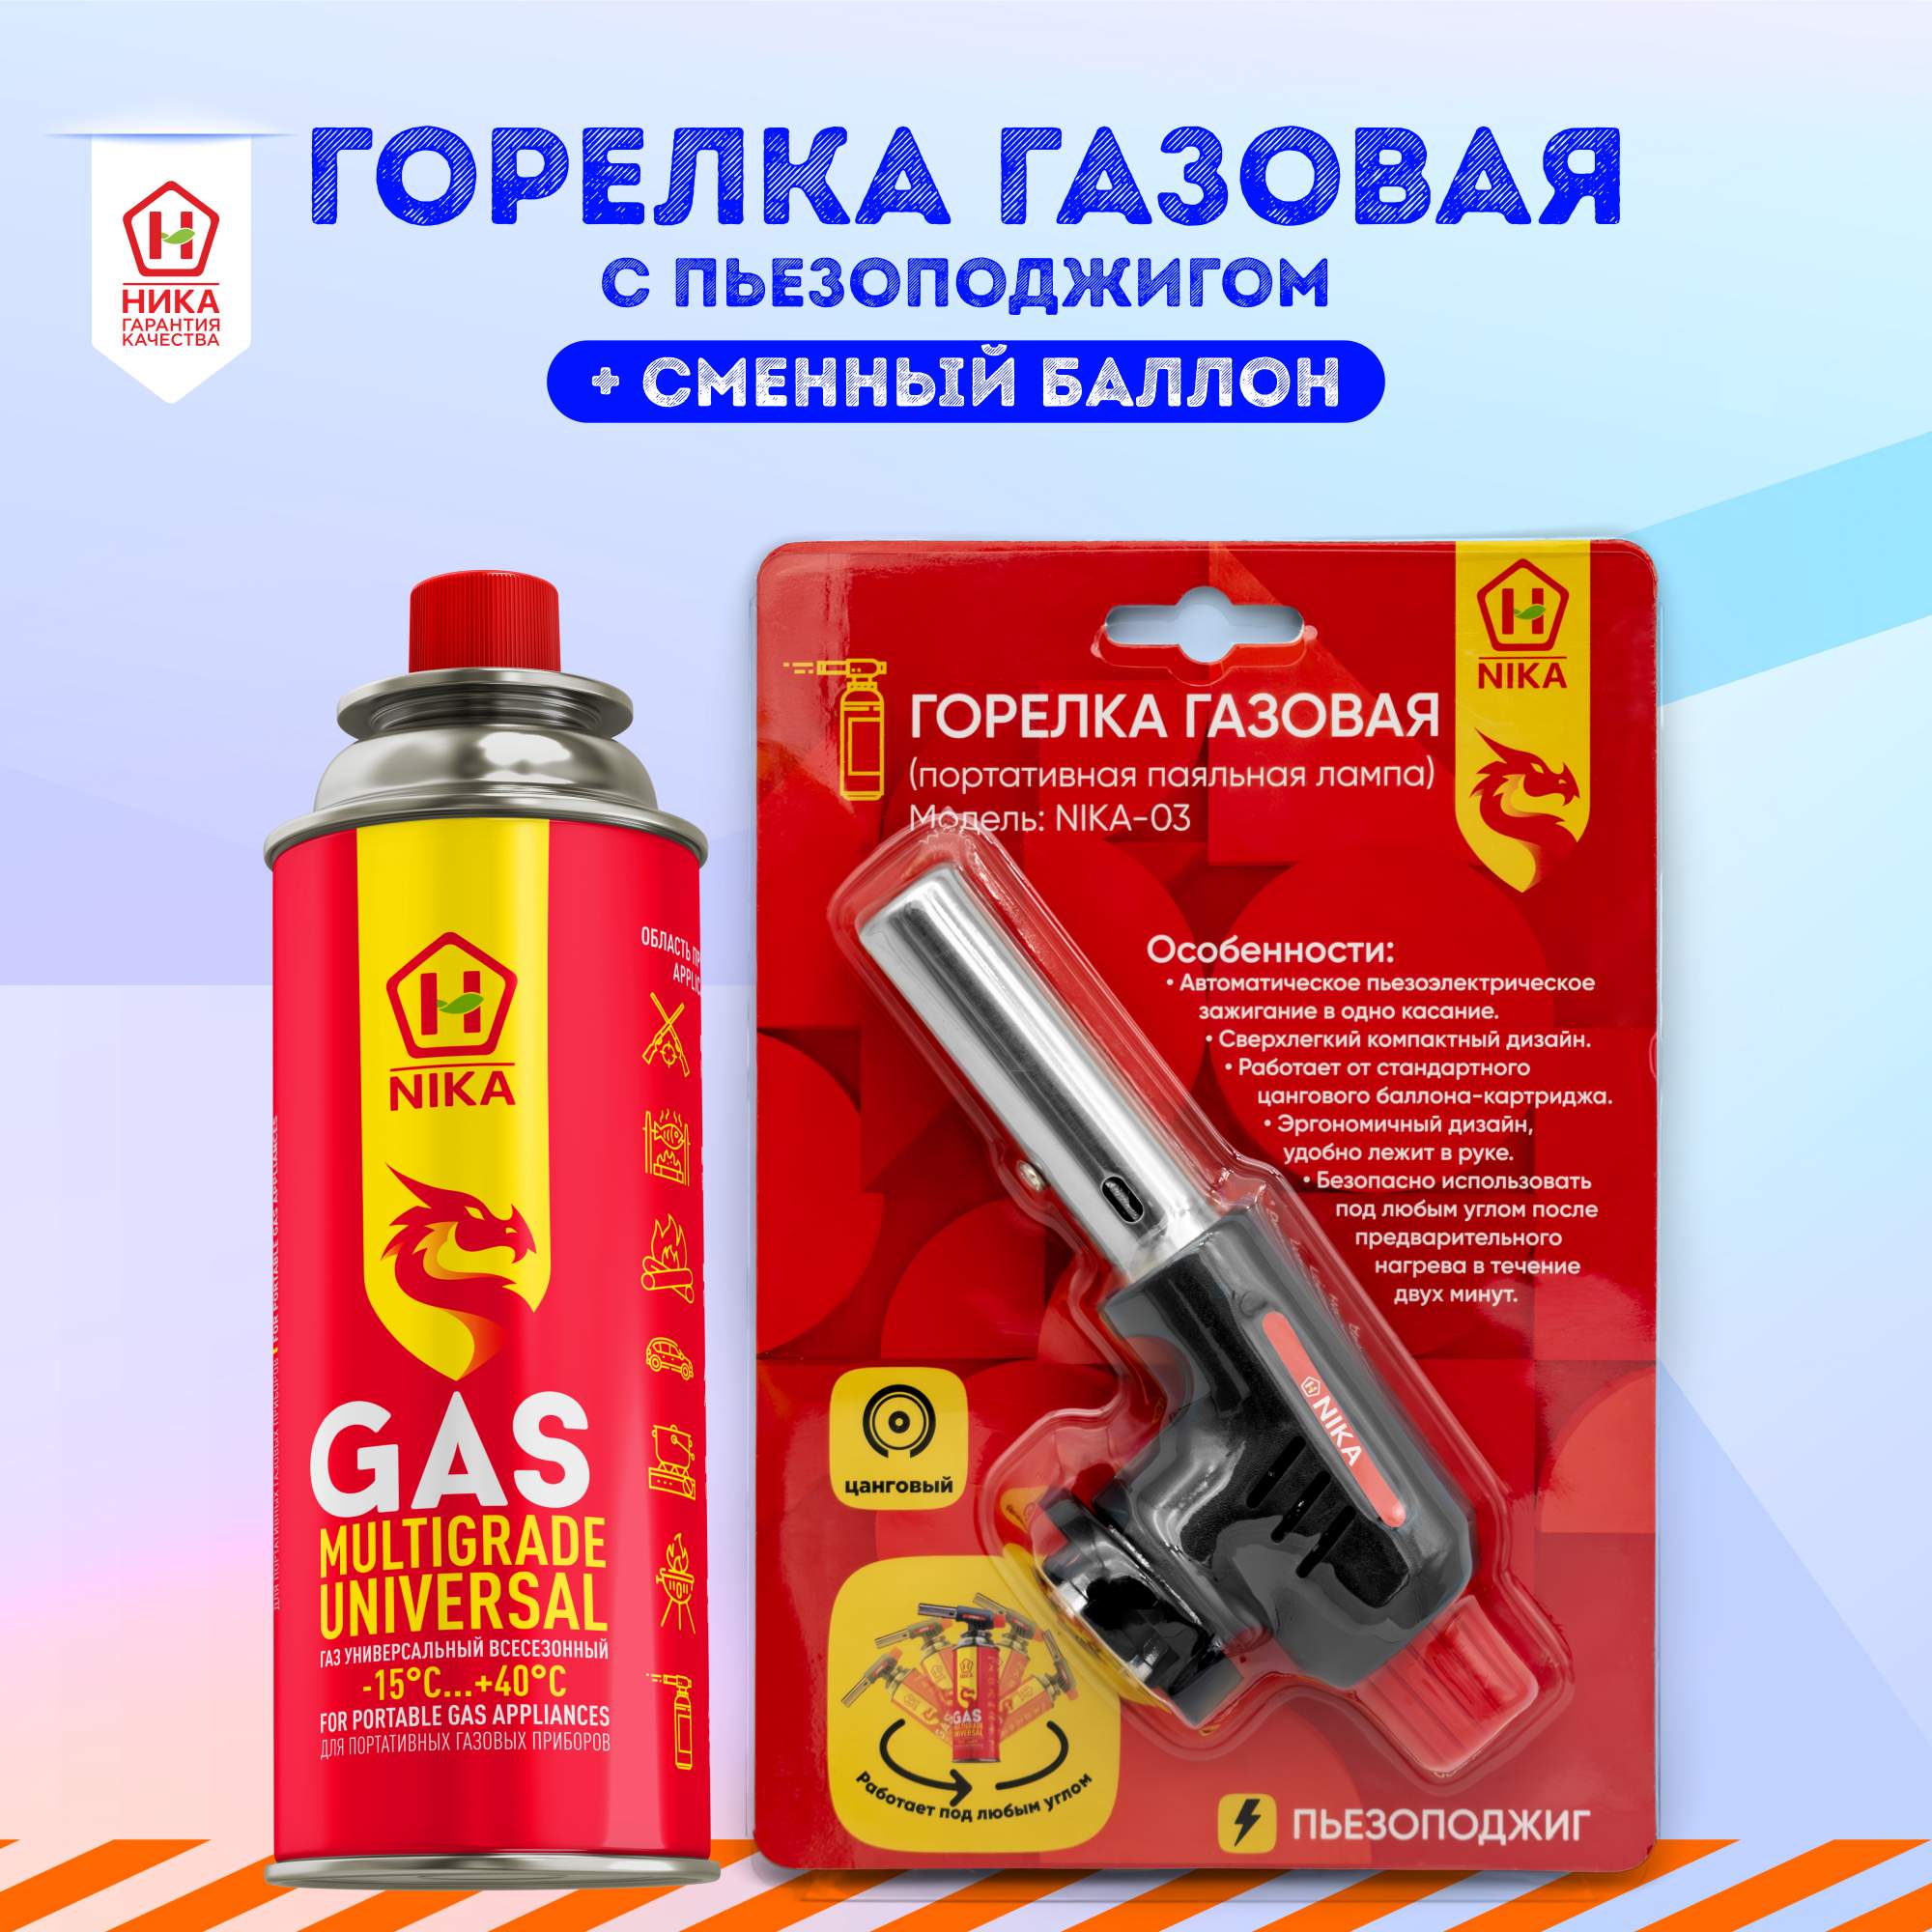 Туристическая газовая горелка зажигалка с пьезоподжигом +1 баллон газа в комплекте ТМ Nika